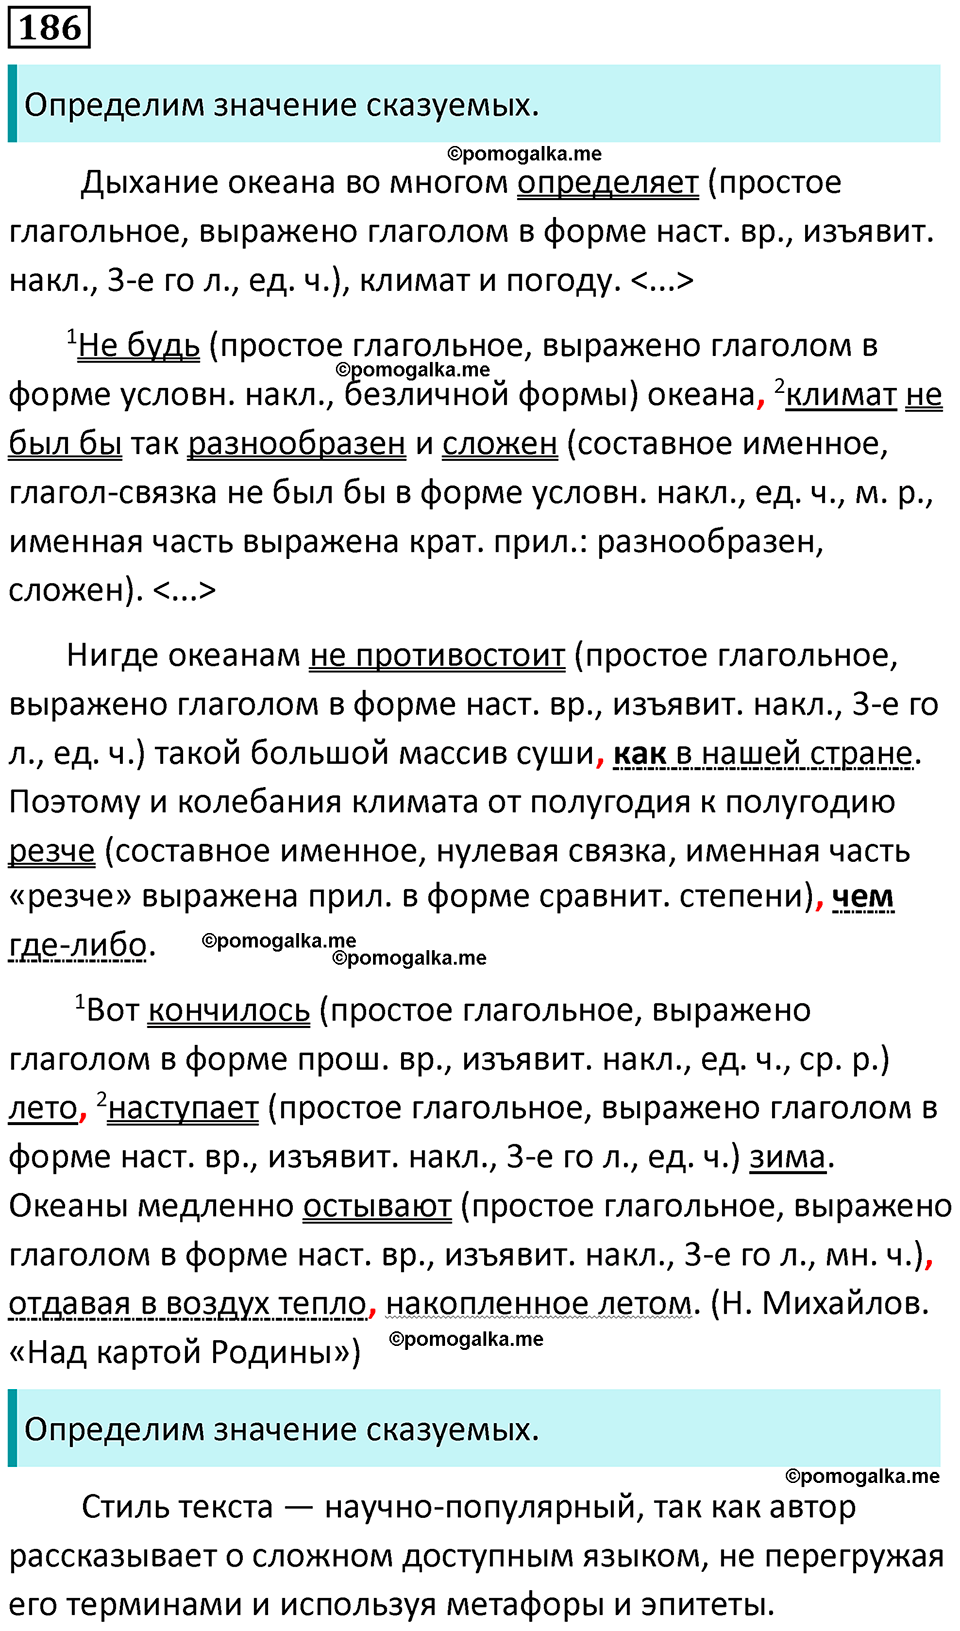 разбор упражнения №186 русский язык 8 класс Бархударов 2023 год